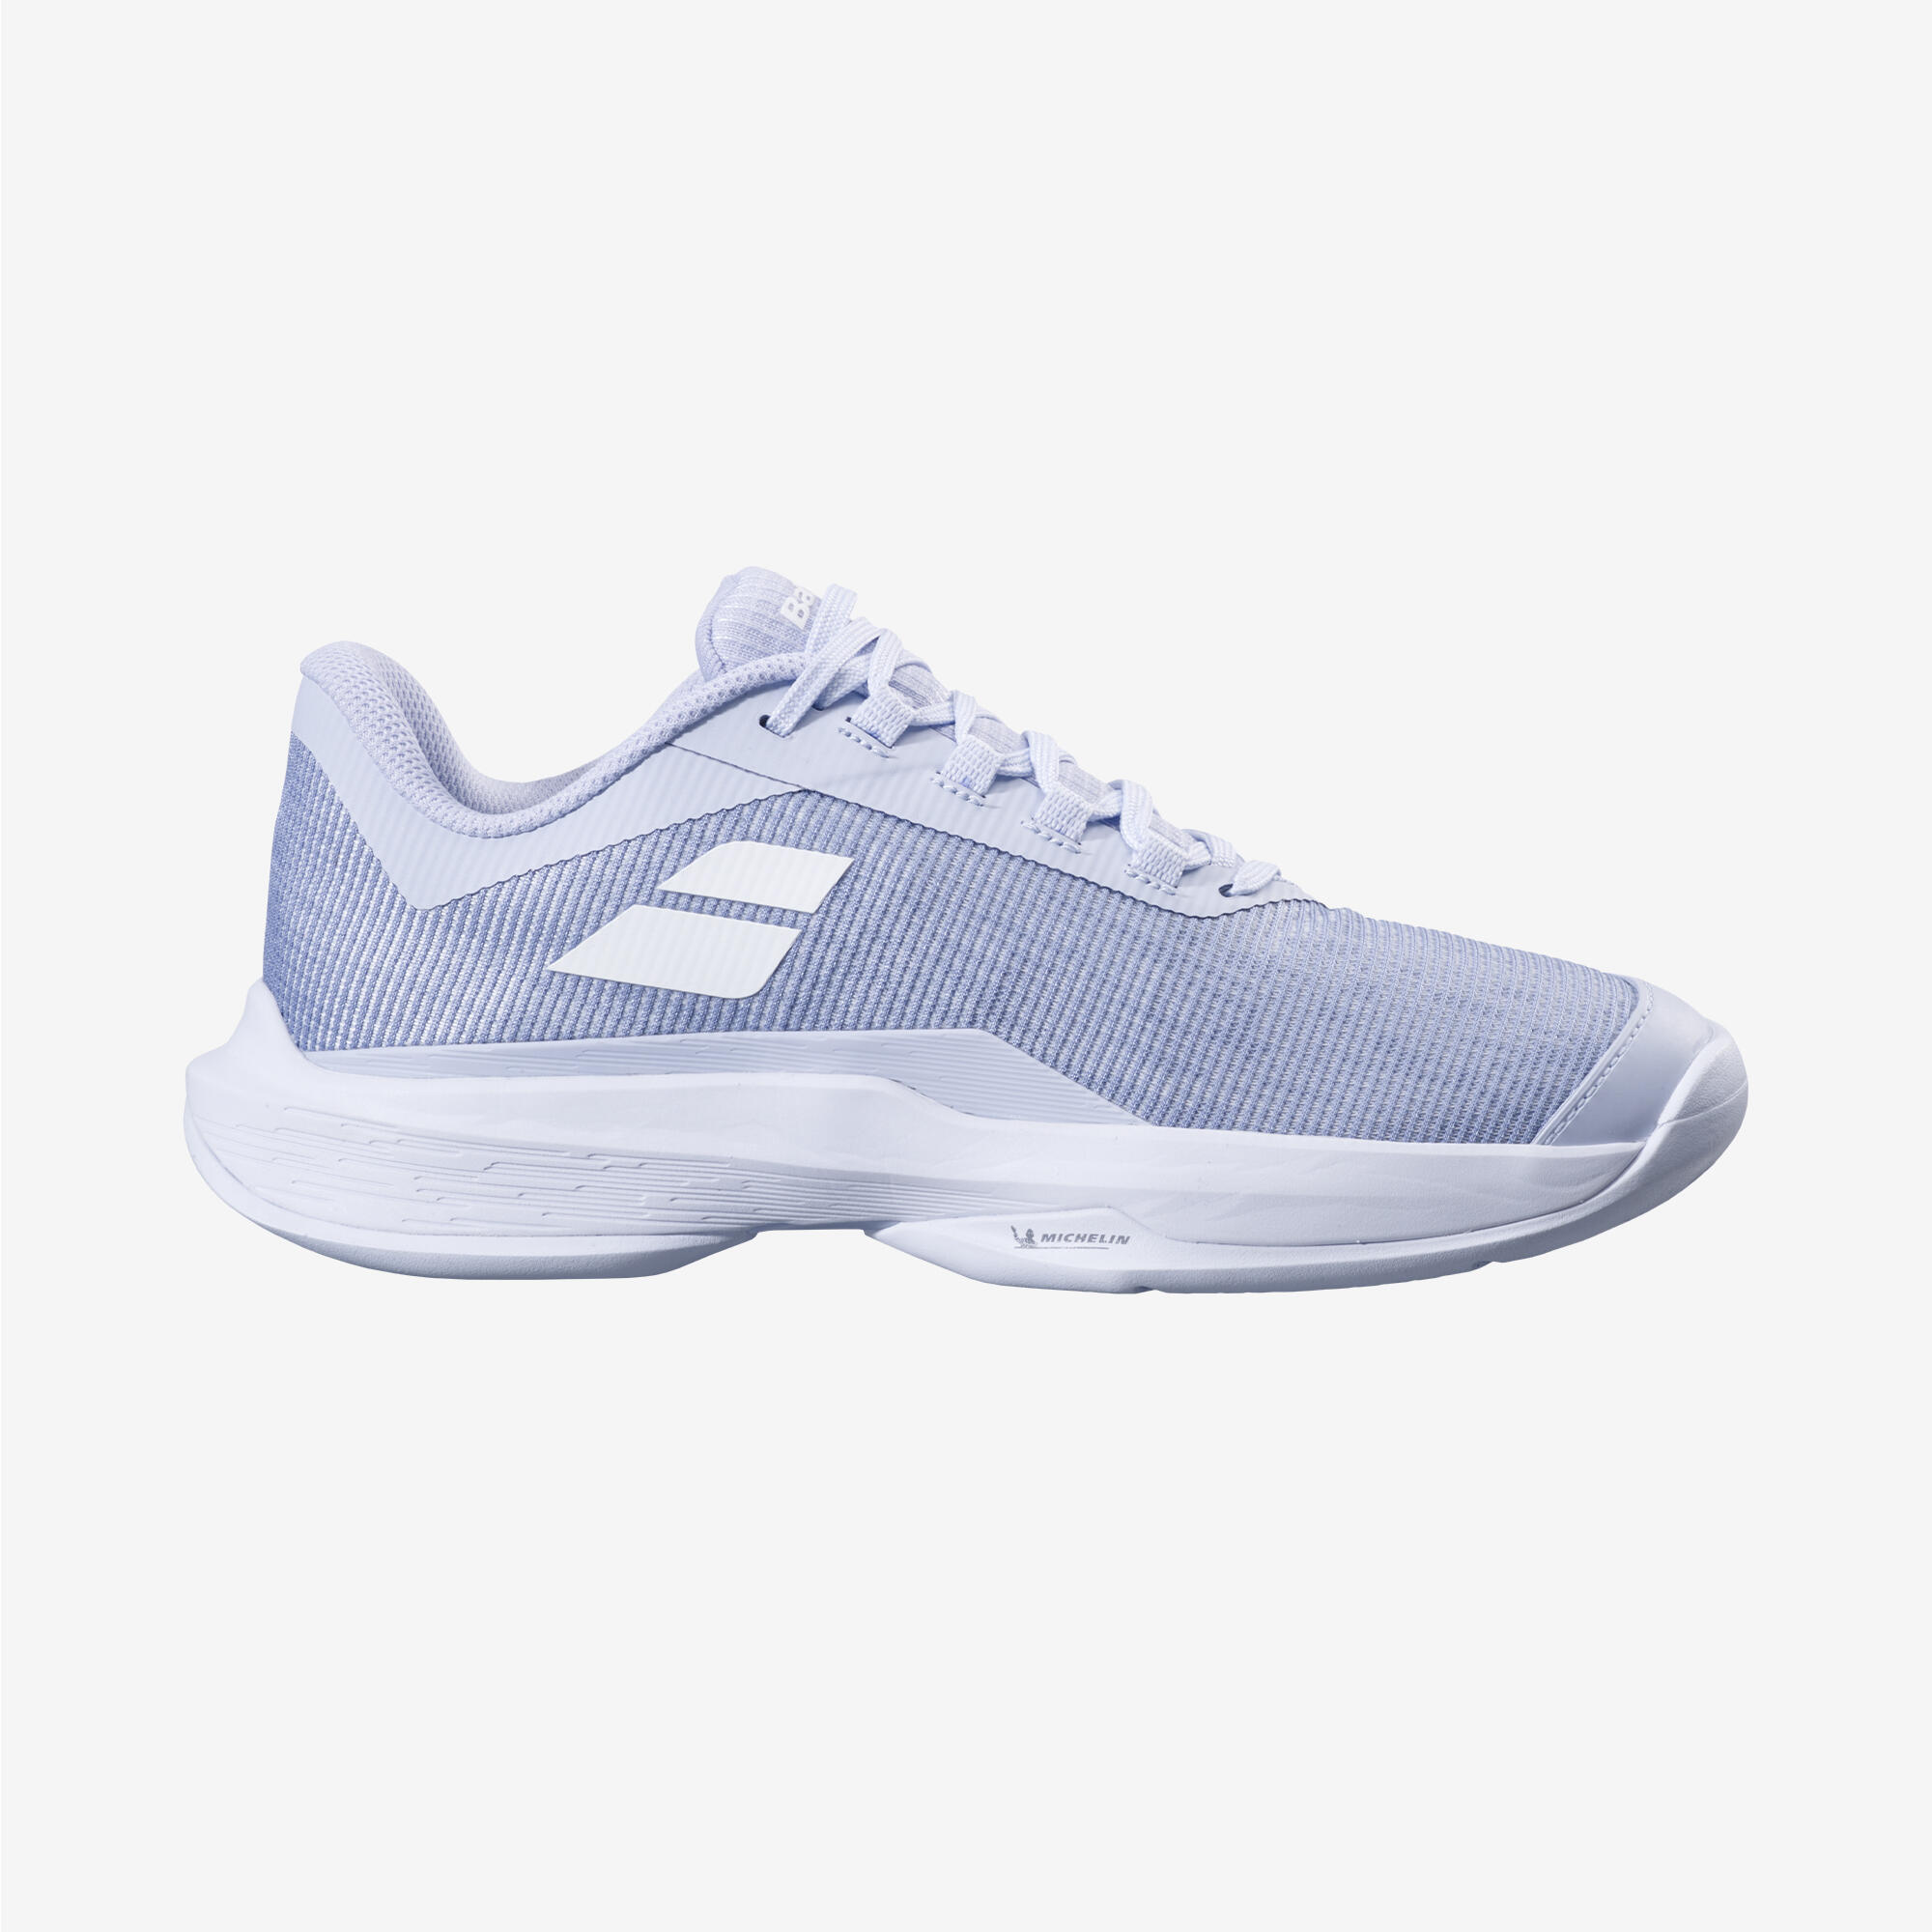 BABOLAT Women's Multi-Court Tennis Shoes Jet Tere - Lavender